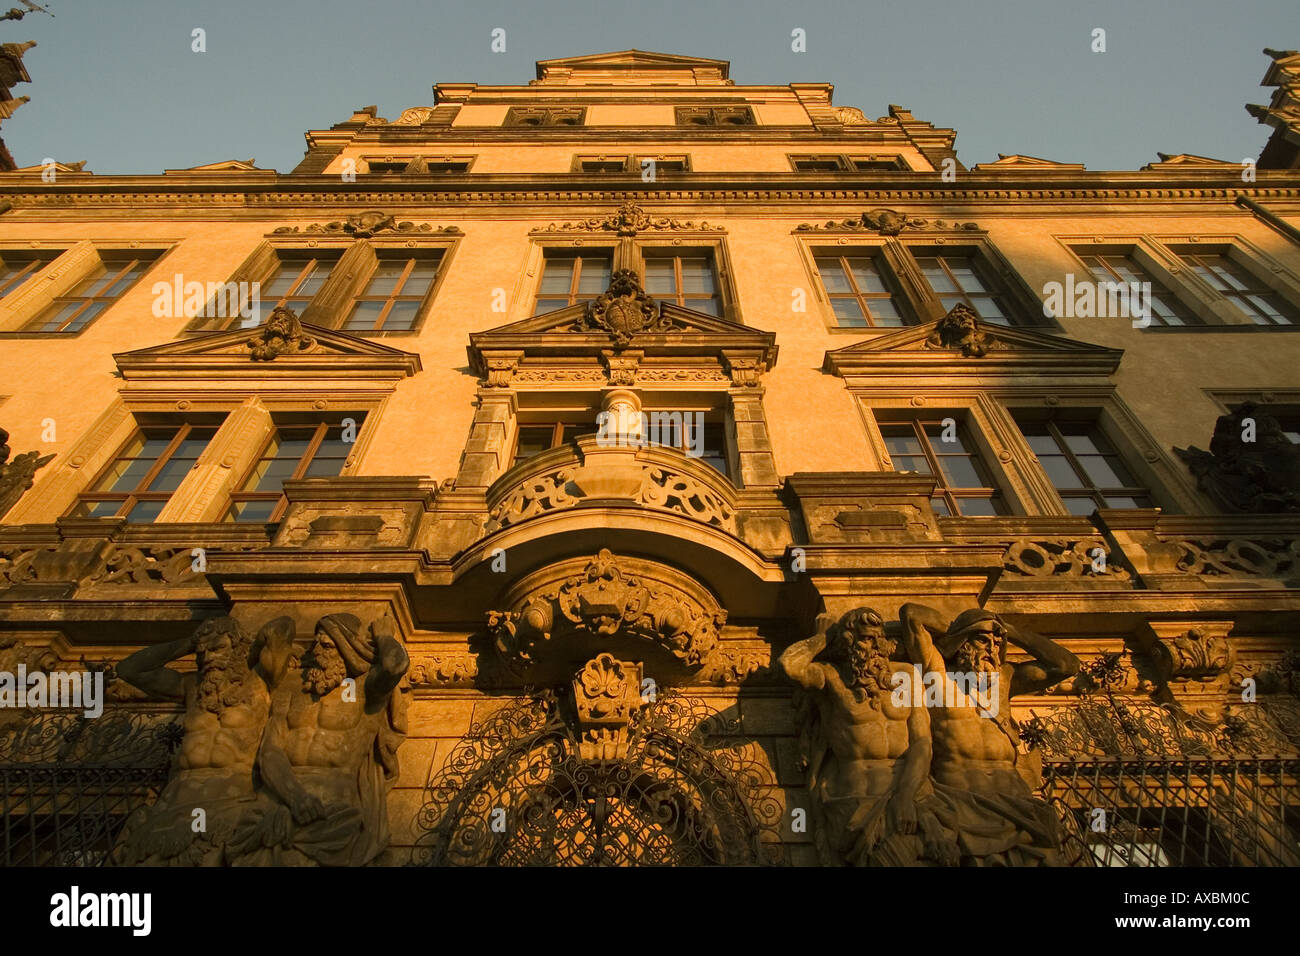 DEU Dresden Saxony old city center castle facade Stock Photo